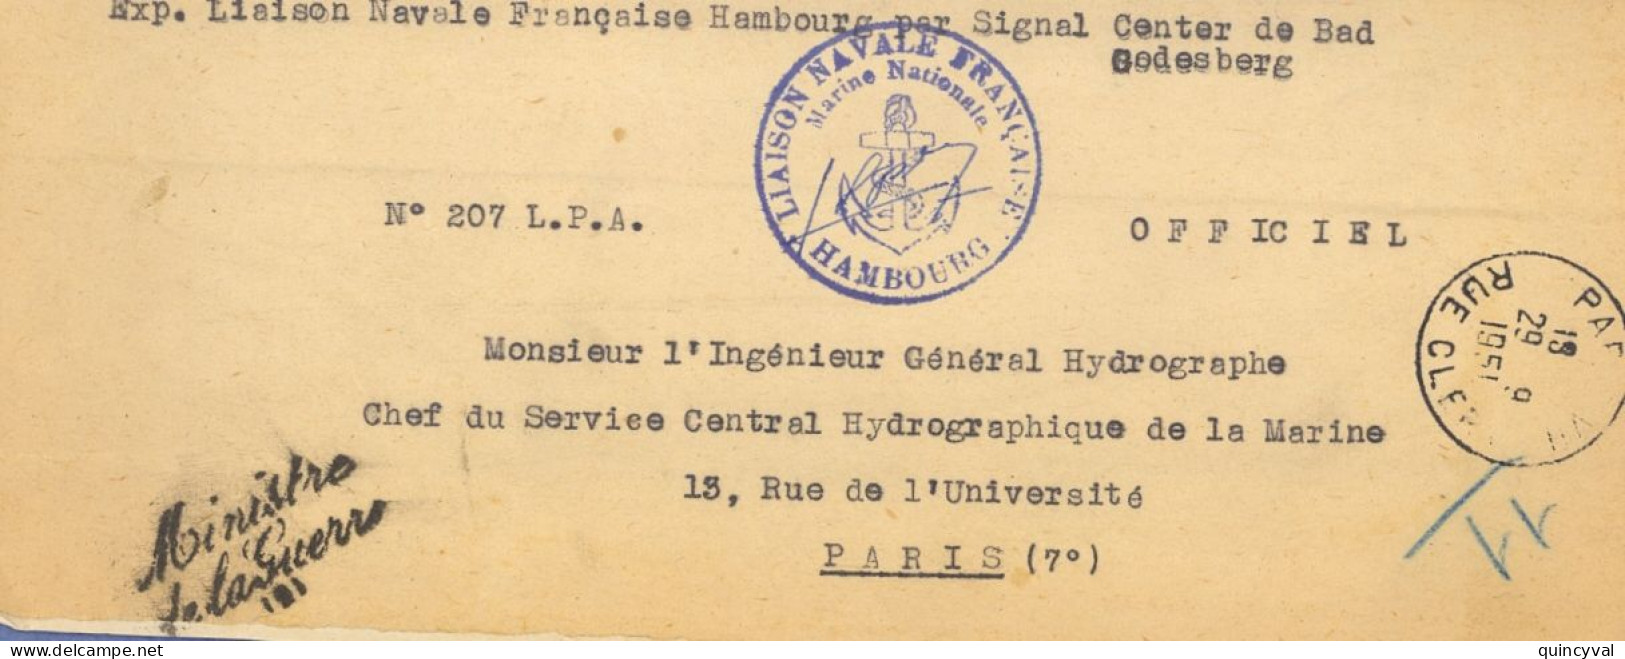 Liaison Navale Française Hambourg Signal Center  Bad Godesberg Griffe Ministre De La Guerre 1951 Paris Clery Ancre - Scheepspost